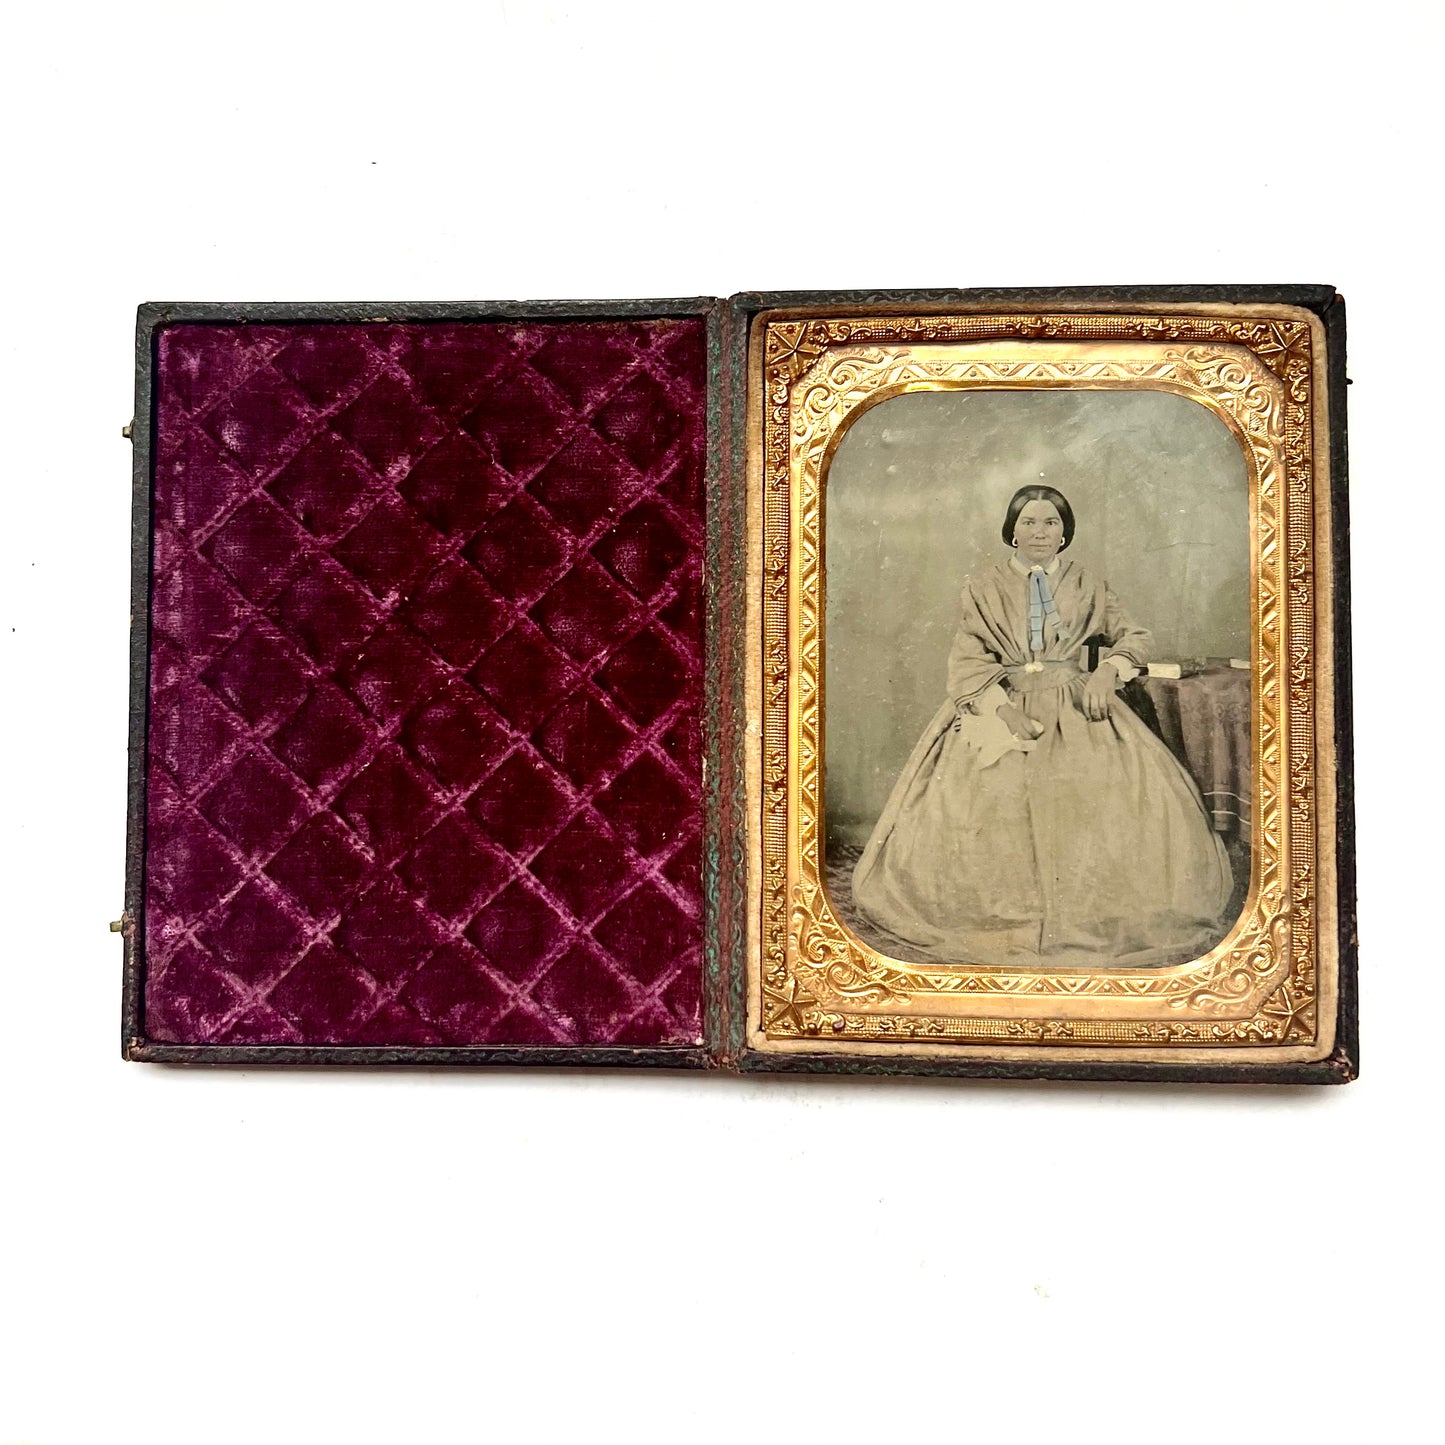 约 1850 年代精美的四分之一板古董银版照相术。原装皮革和天鹅绒盒，配精美黄铜垫